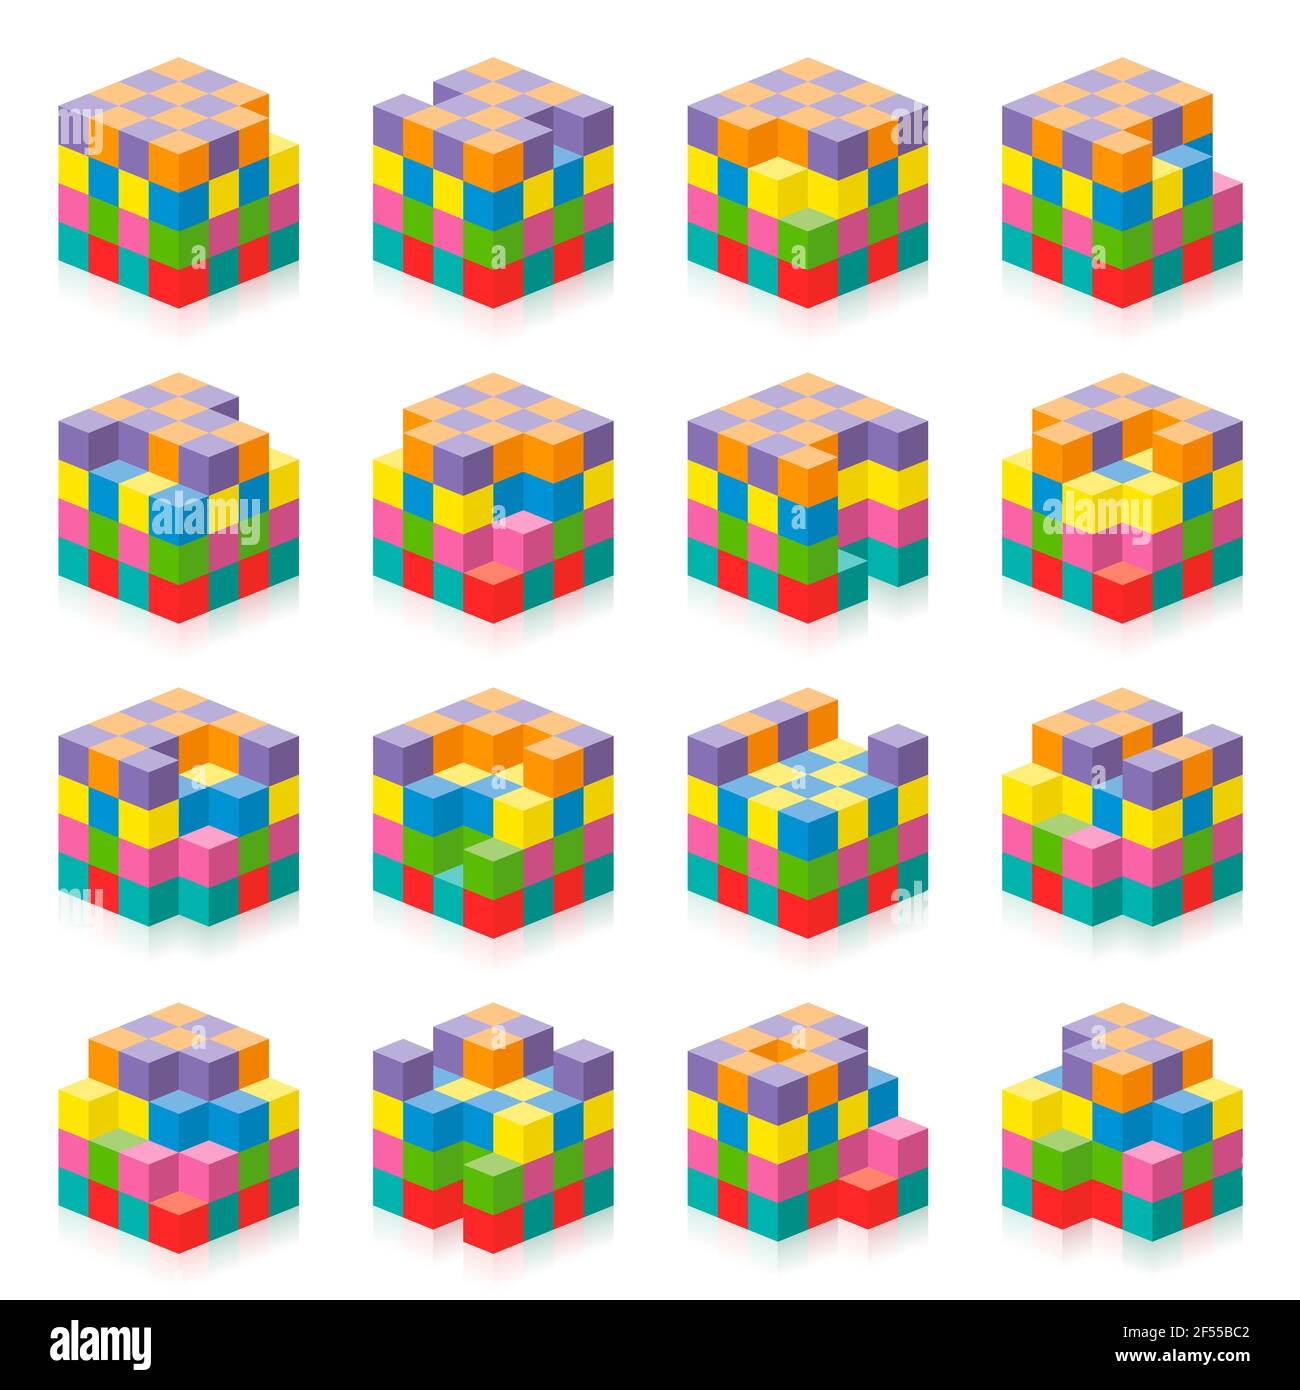 Cubo con cubos faltantes de 1 a 16. Ejercicio de percepción espacial tridimensional. Juego colorido para contar huecos, agujeros, espacios en blanco. Foto de stock